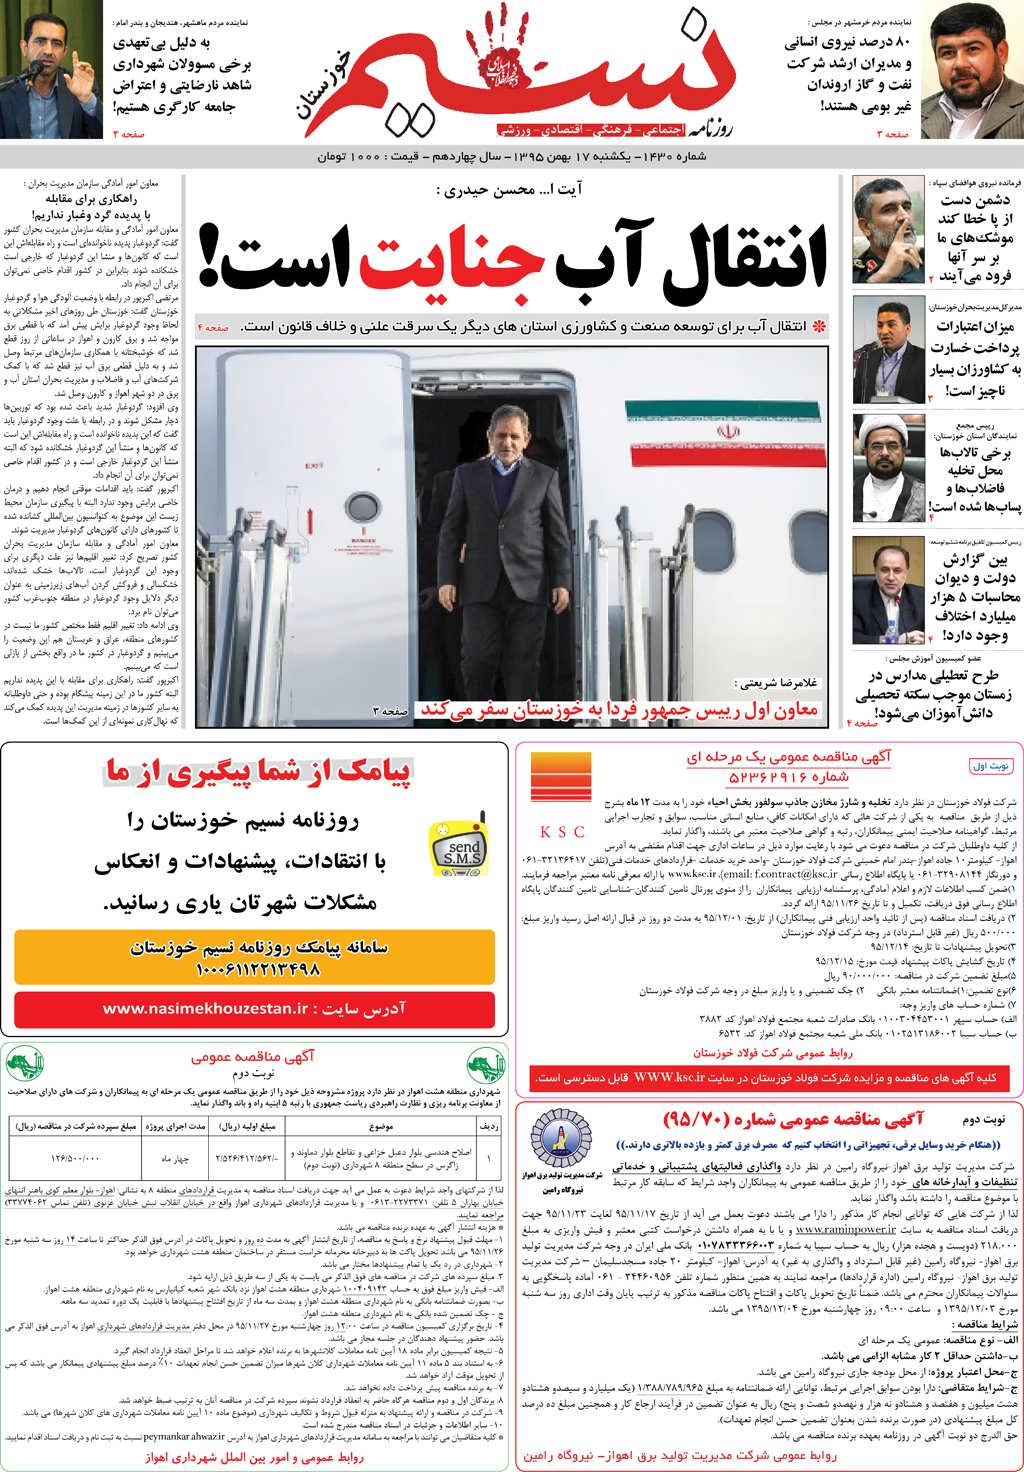 صفحه اصلی روزنامه نسیم شماره 1430